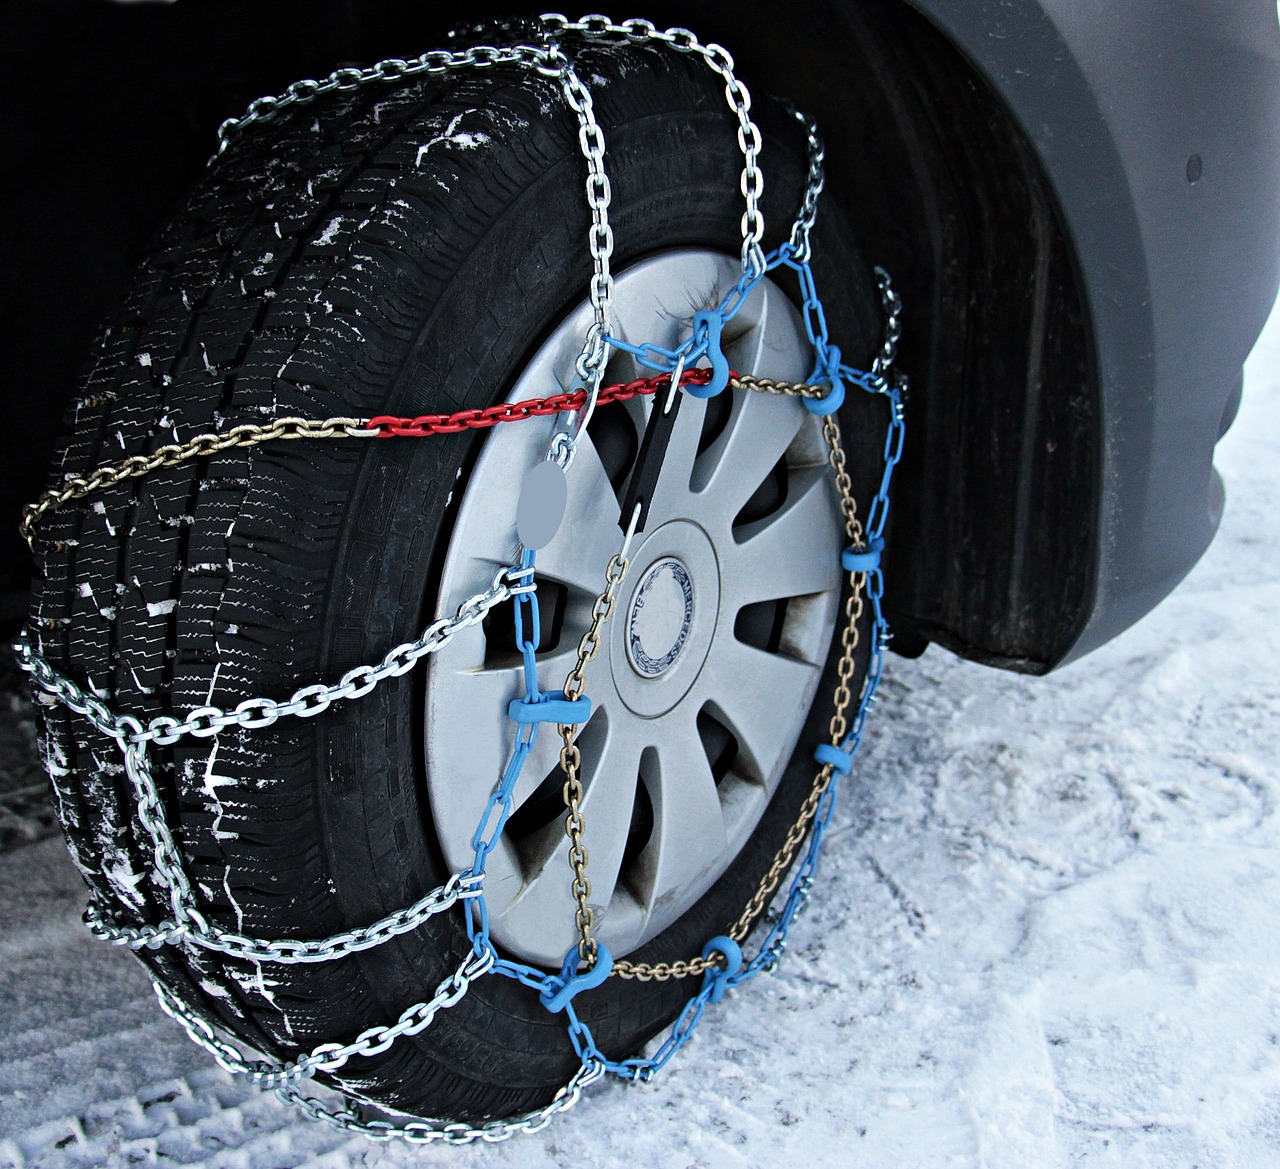 Neumáticos de invierno y cadenas para aumentar la seguridad